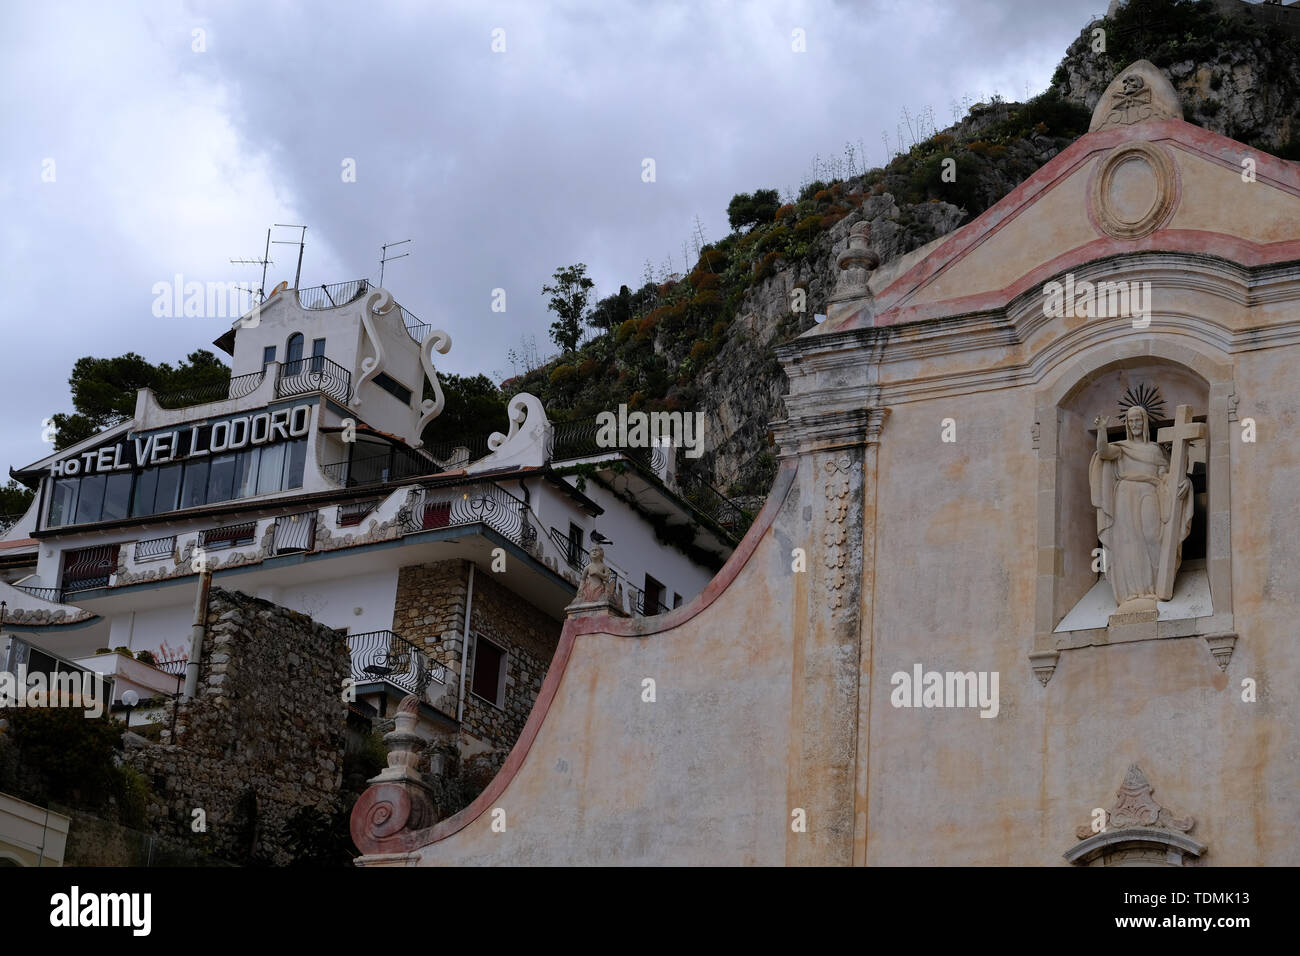 Cityscape of Taormina, Sicily, Italy Stock Photo